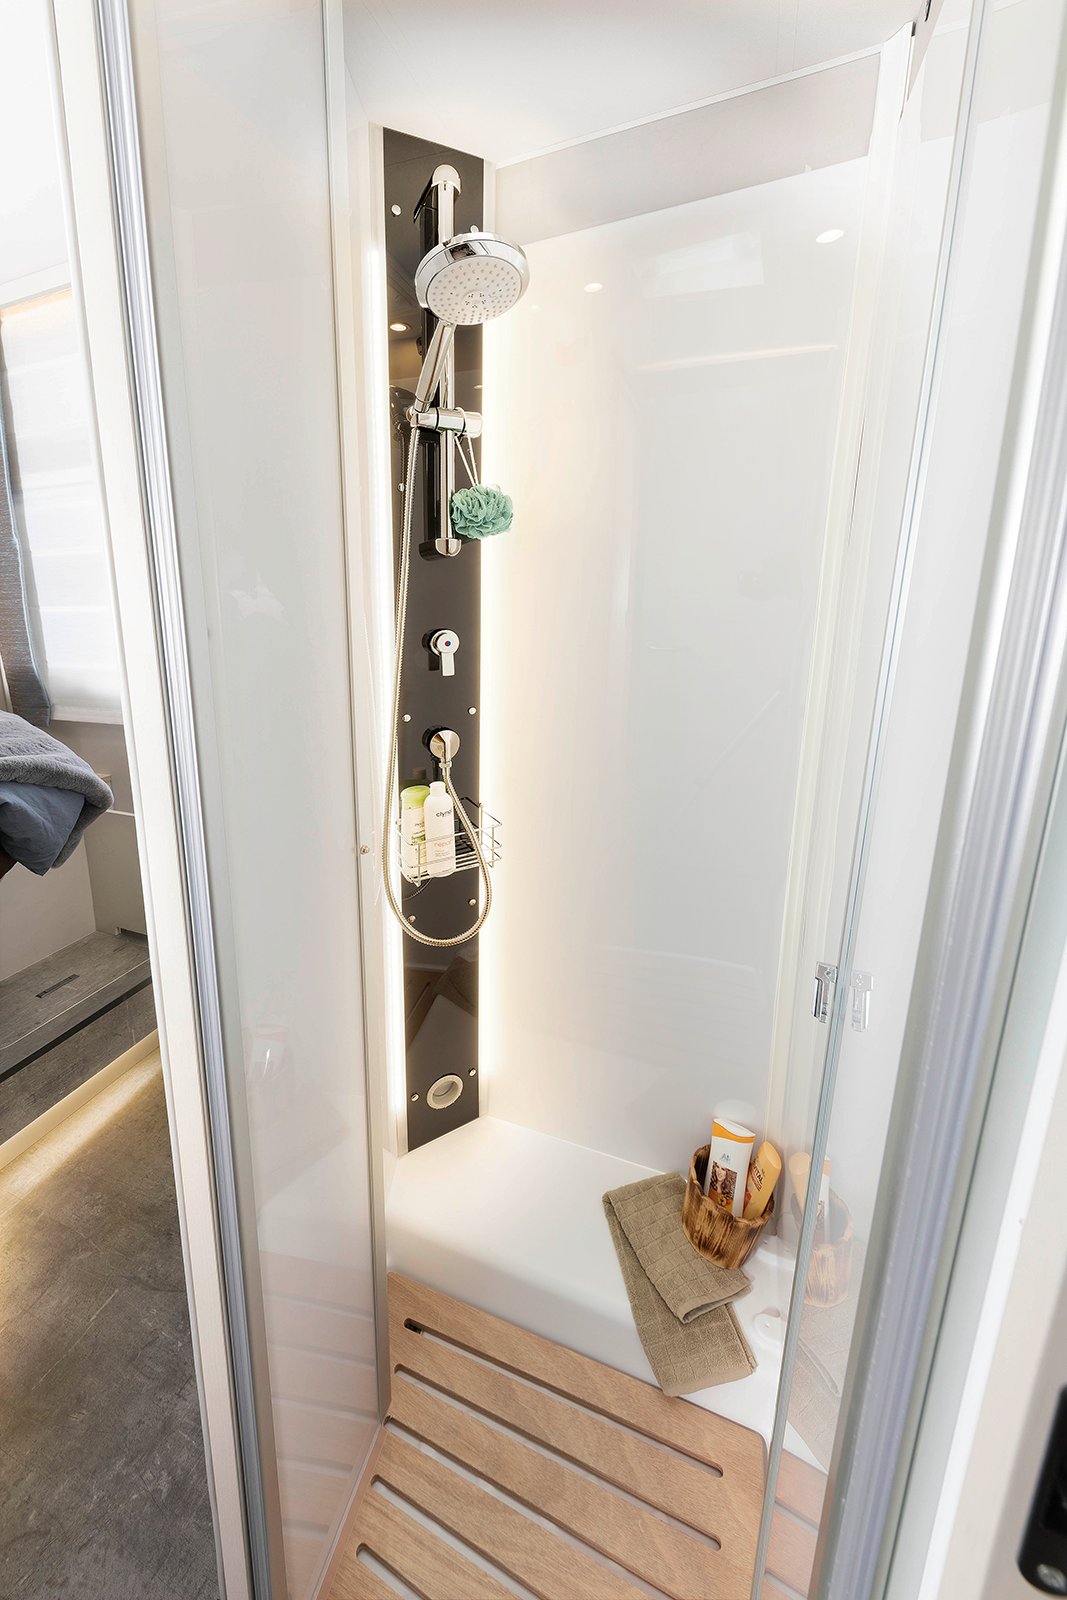 Stor duschkabin i modern design och stämningsbelysning skapar en trivsam miljö